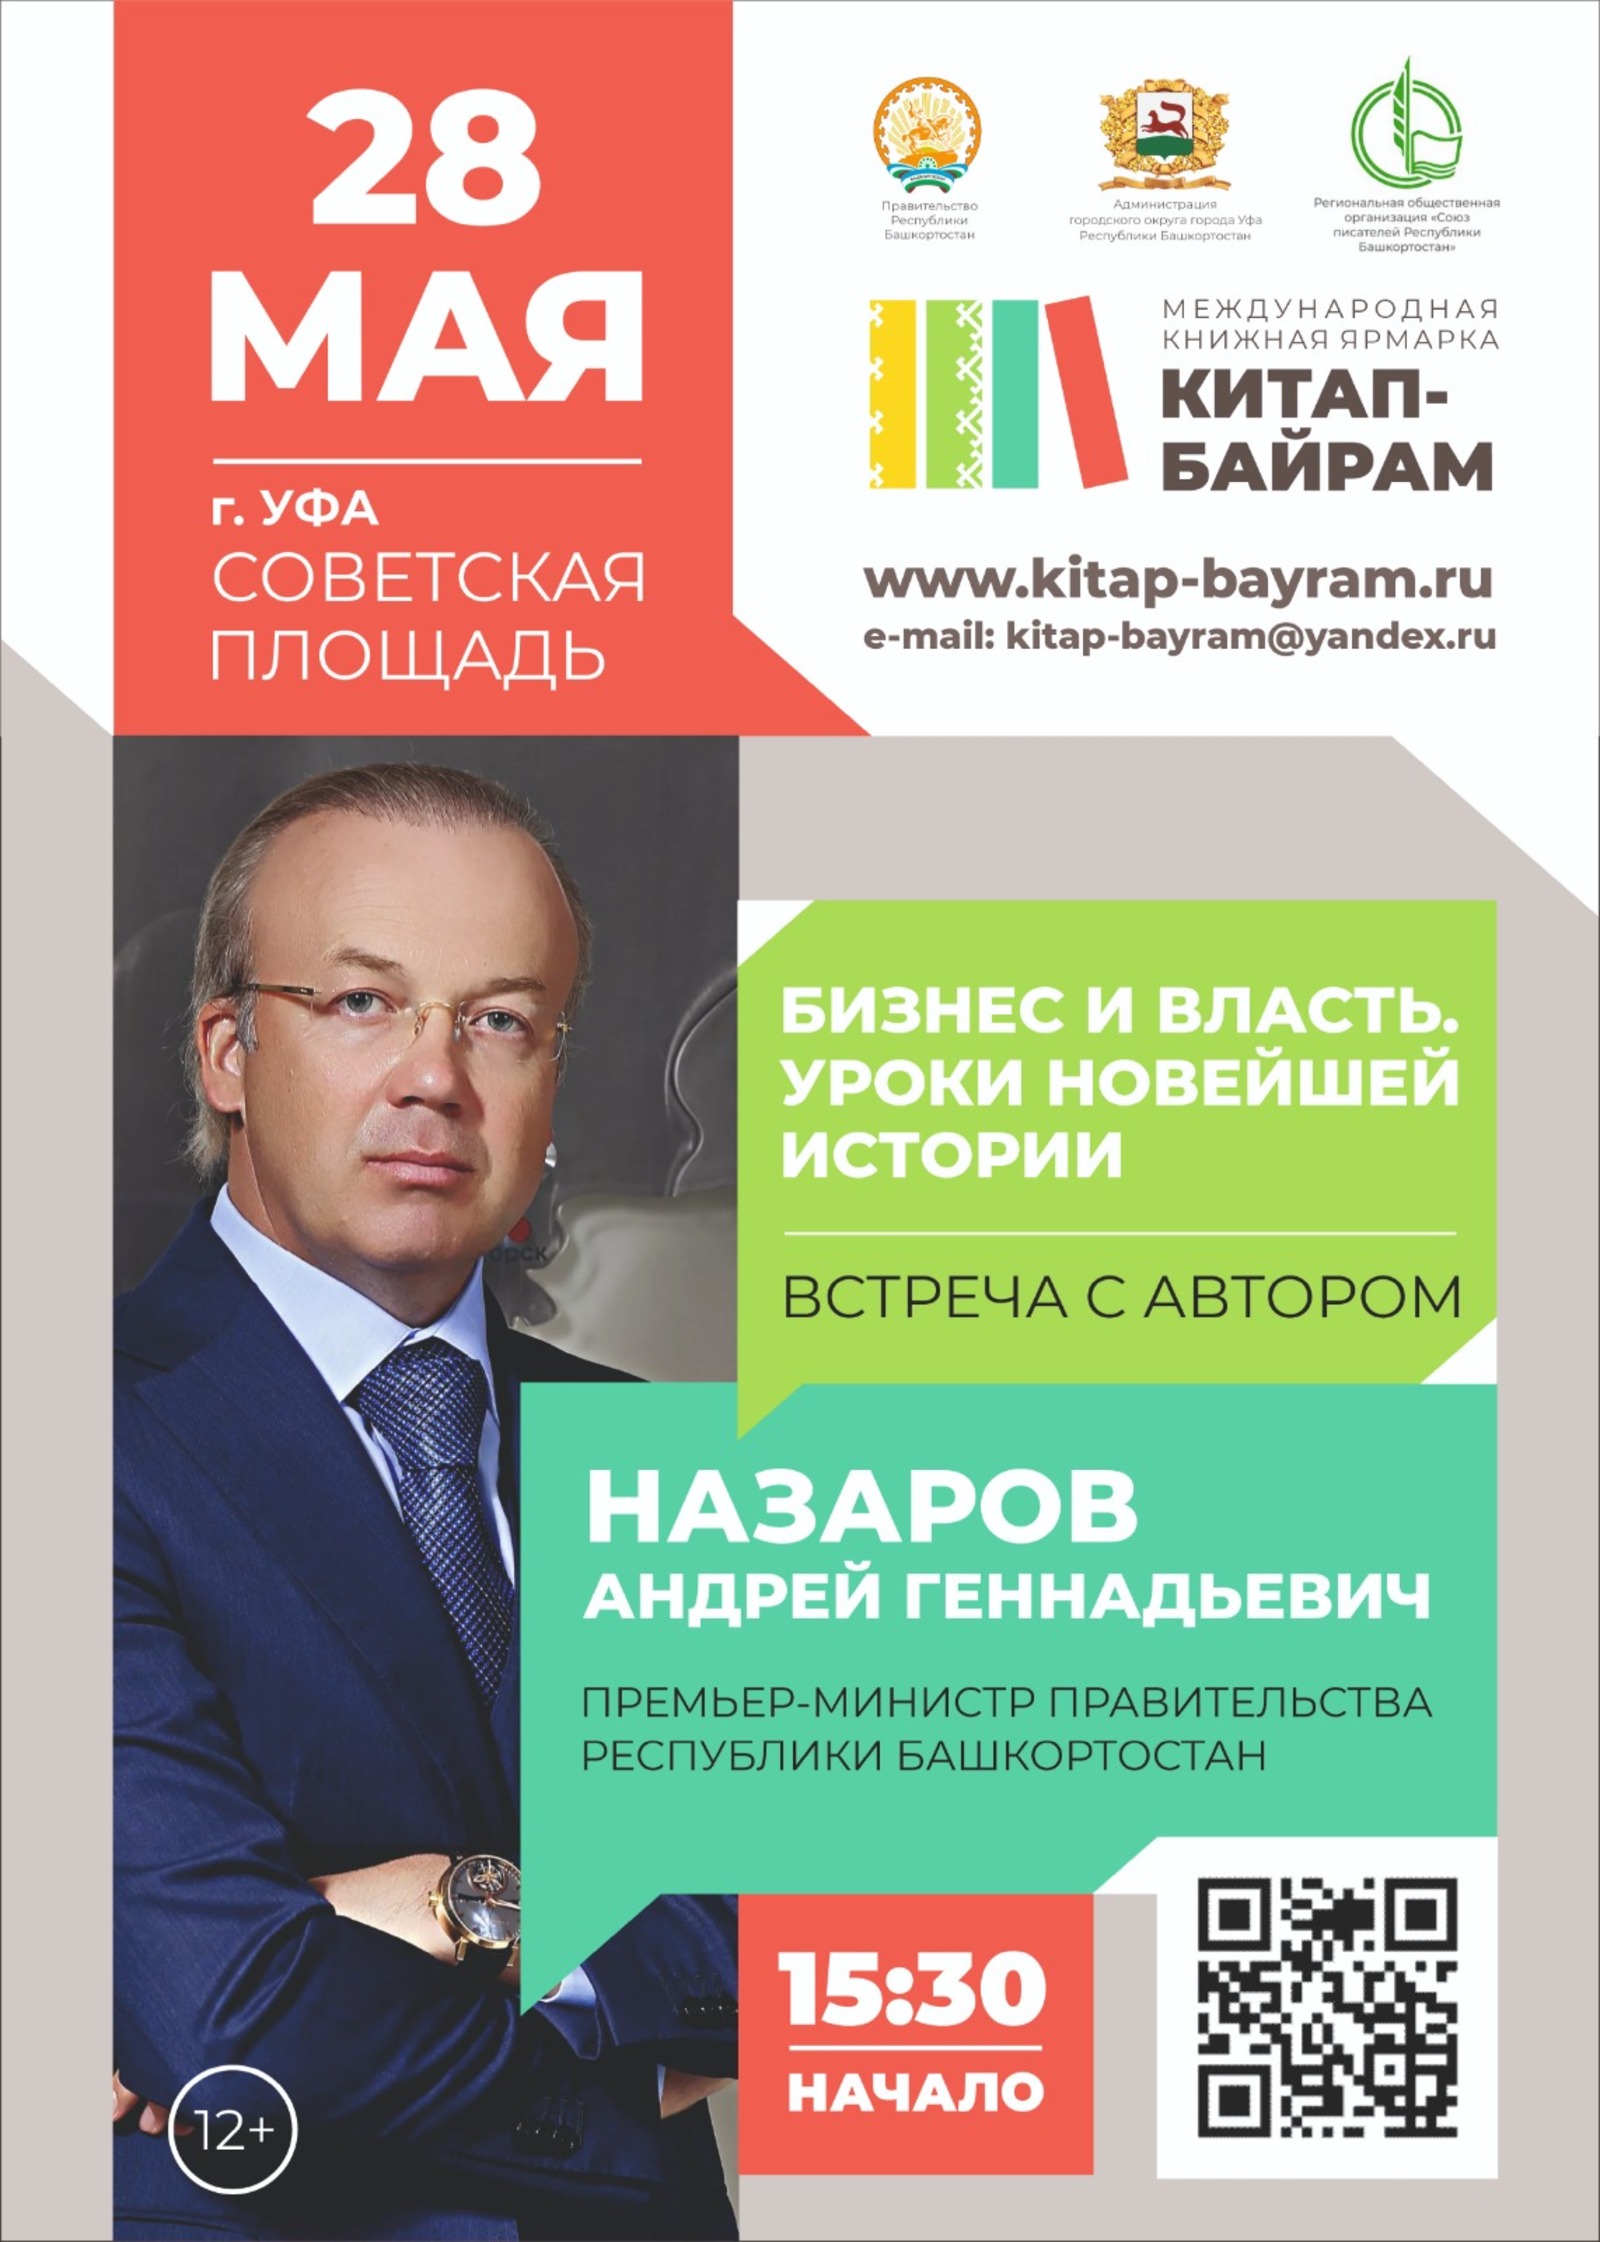 На "Китап-байрам" состоится встреча с премьер-министром Башкортостана